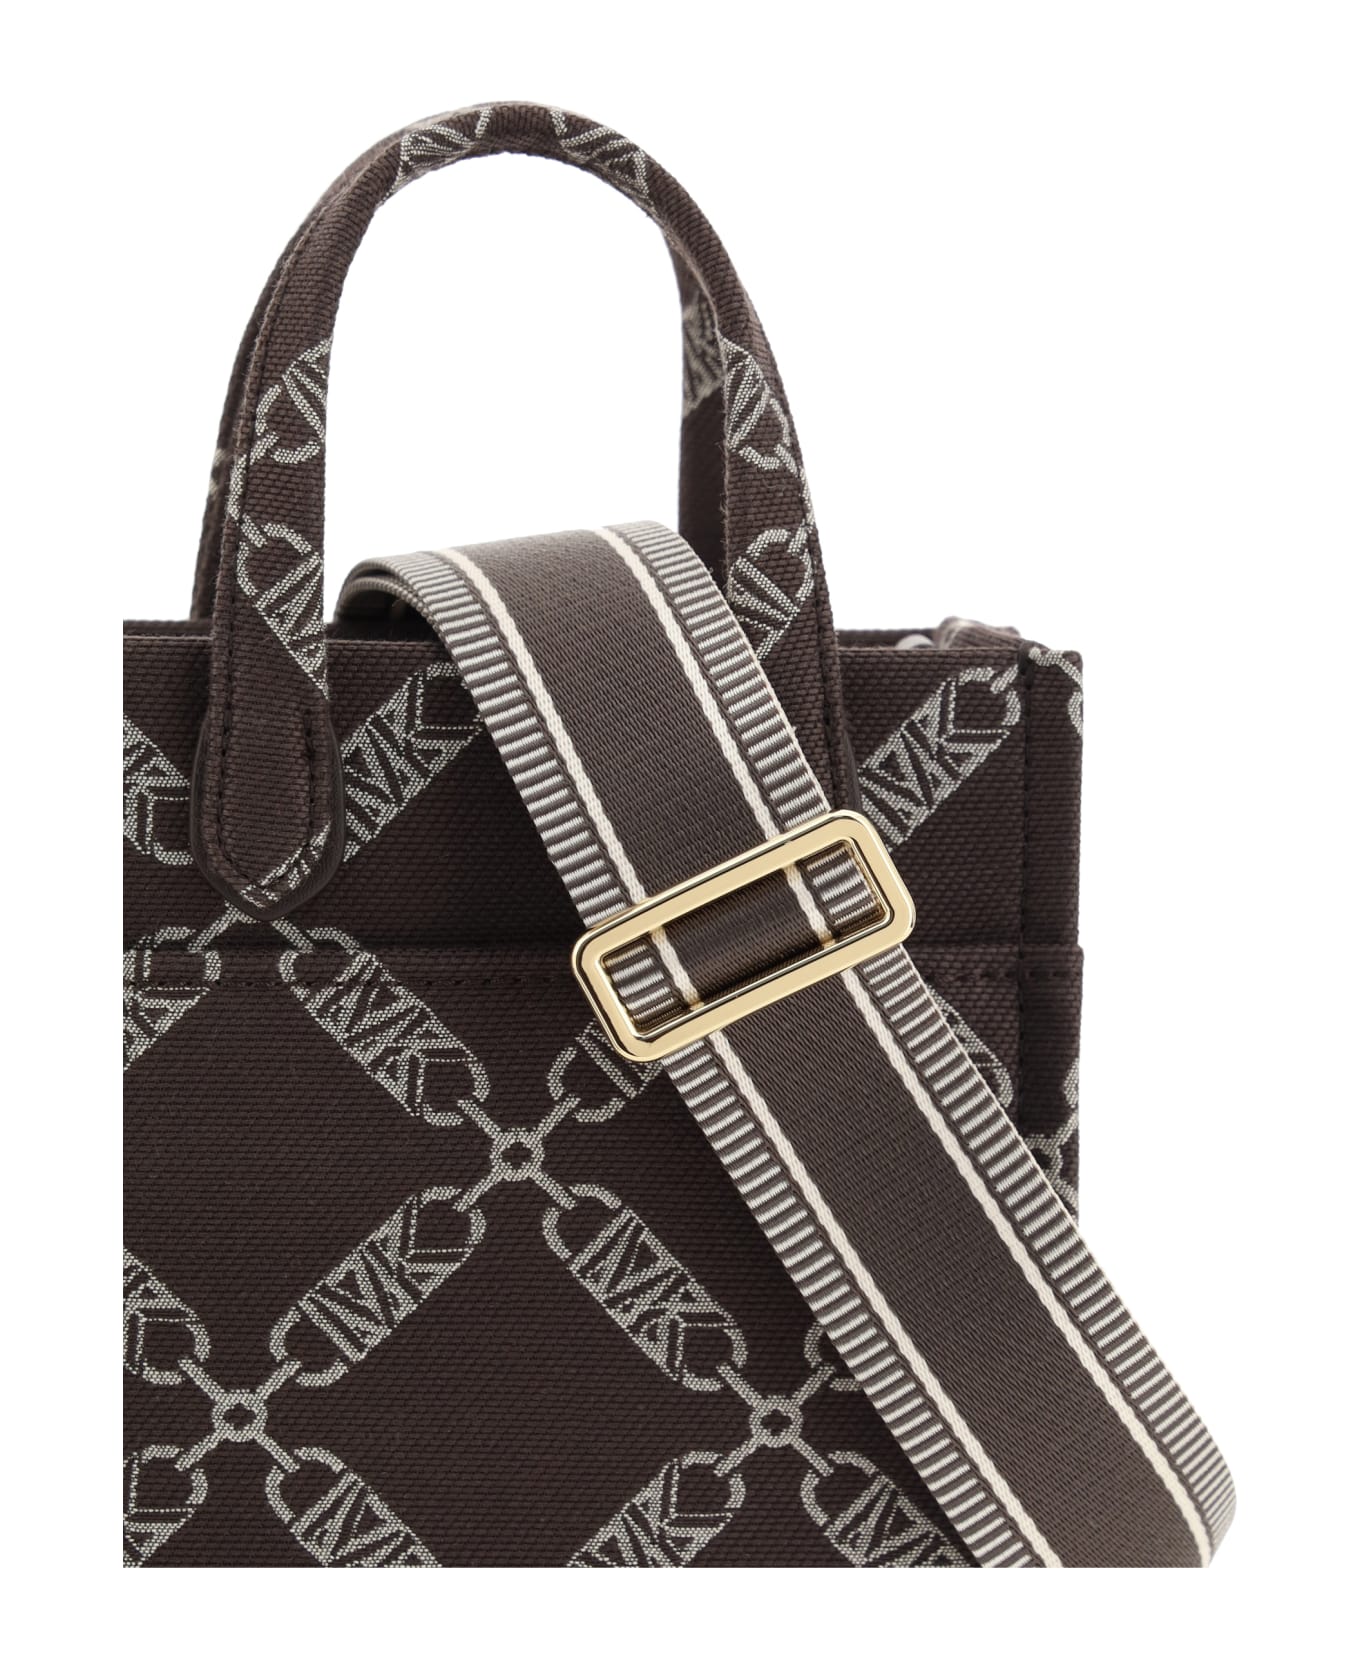 Michael Kors Jacquard Logo Shopper Bag - Choc Multi